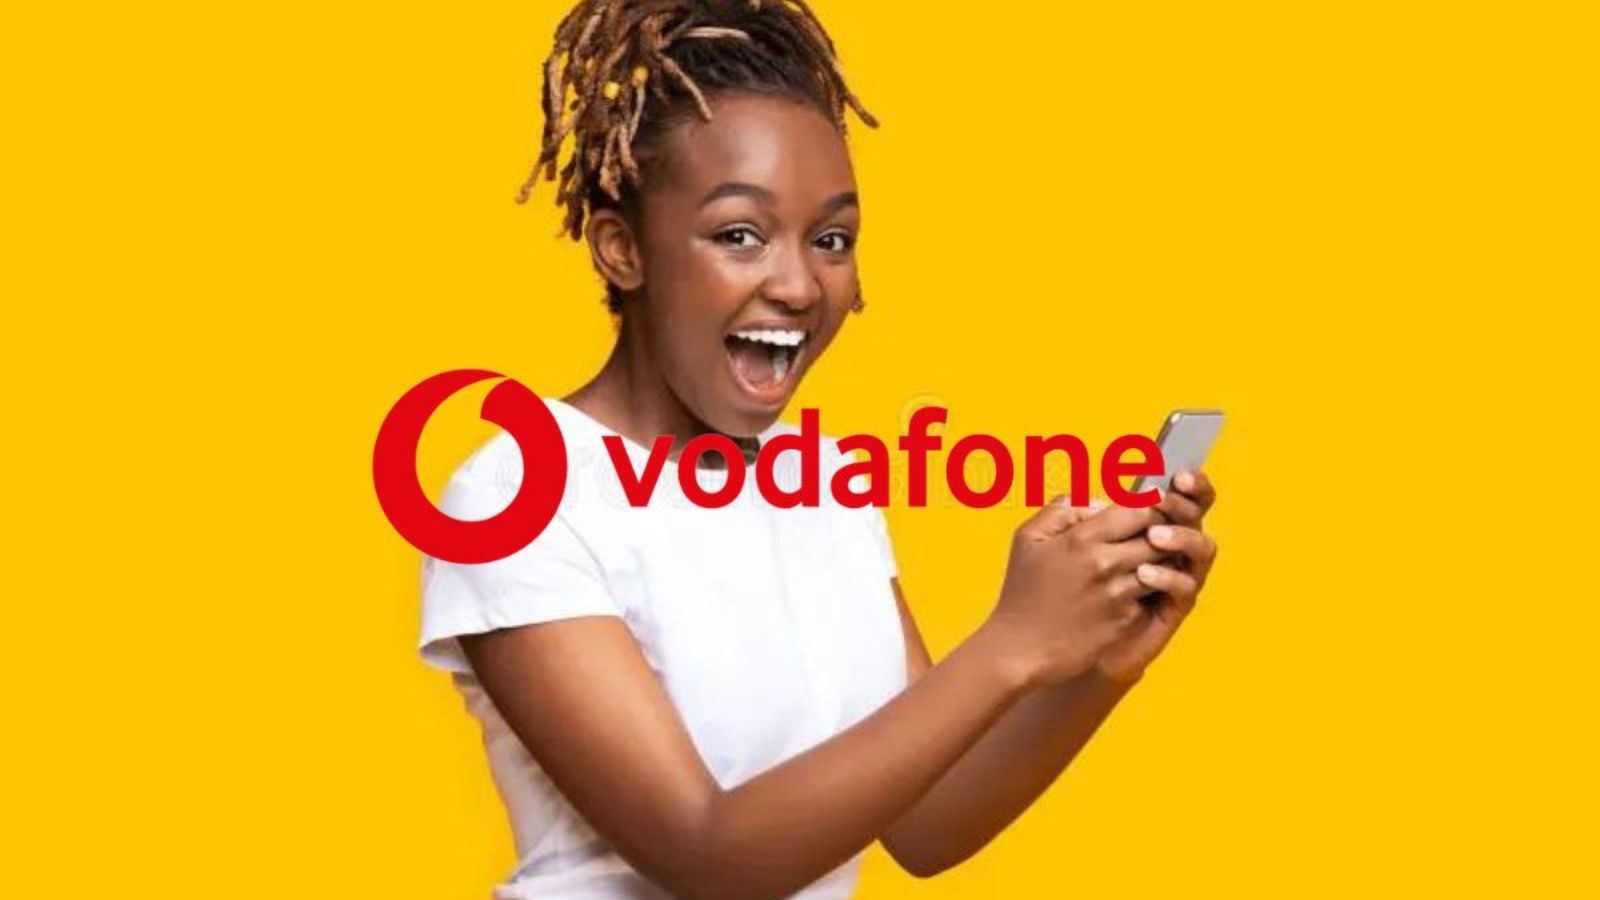 Vodafone a valanga, TUTTO SENZA LIMITI con la Family+ ma per pochi